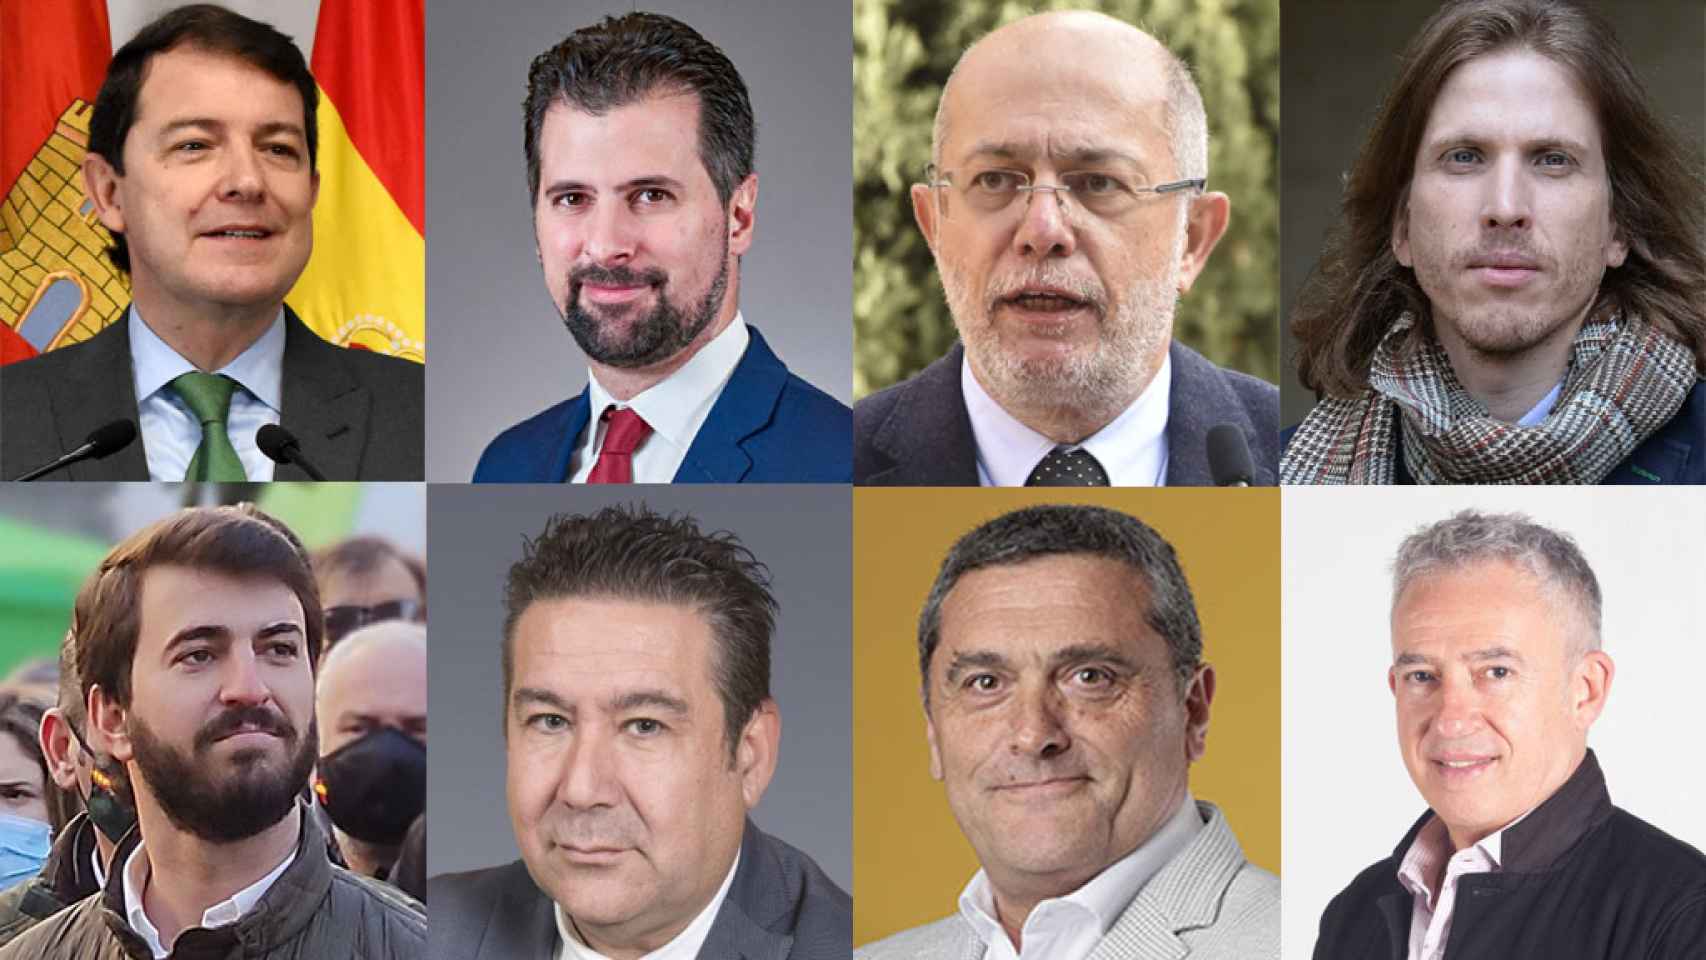 Los candidatos de Castilla y León, todos hombres.